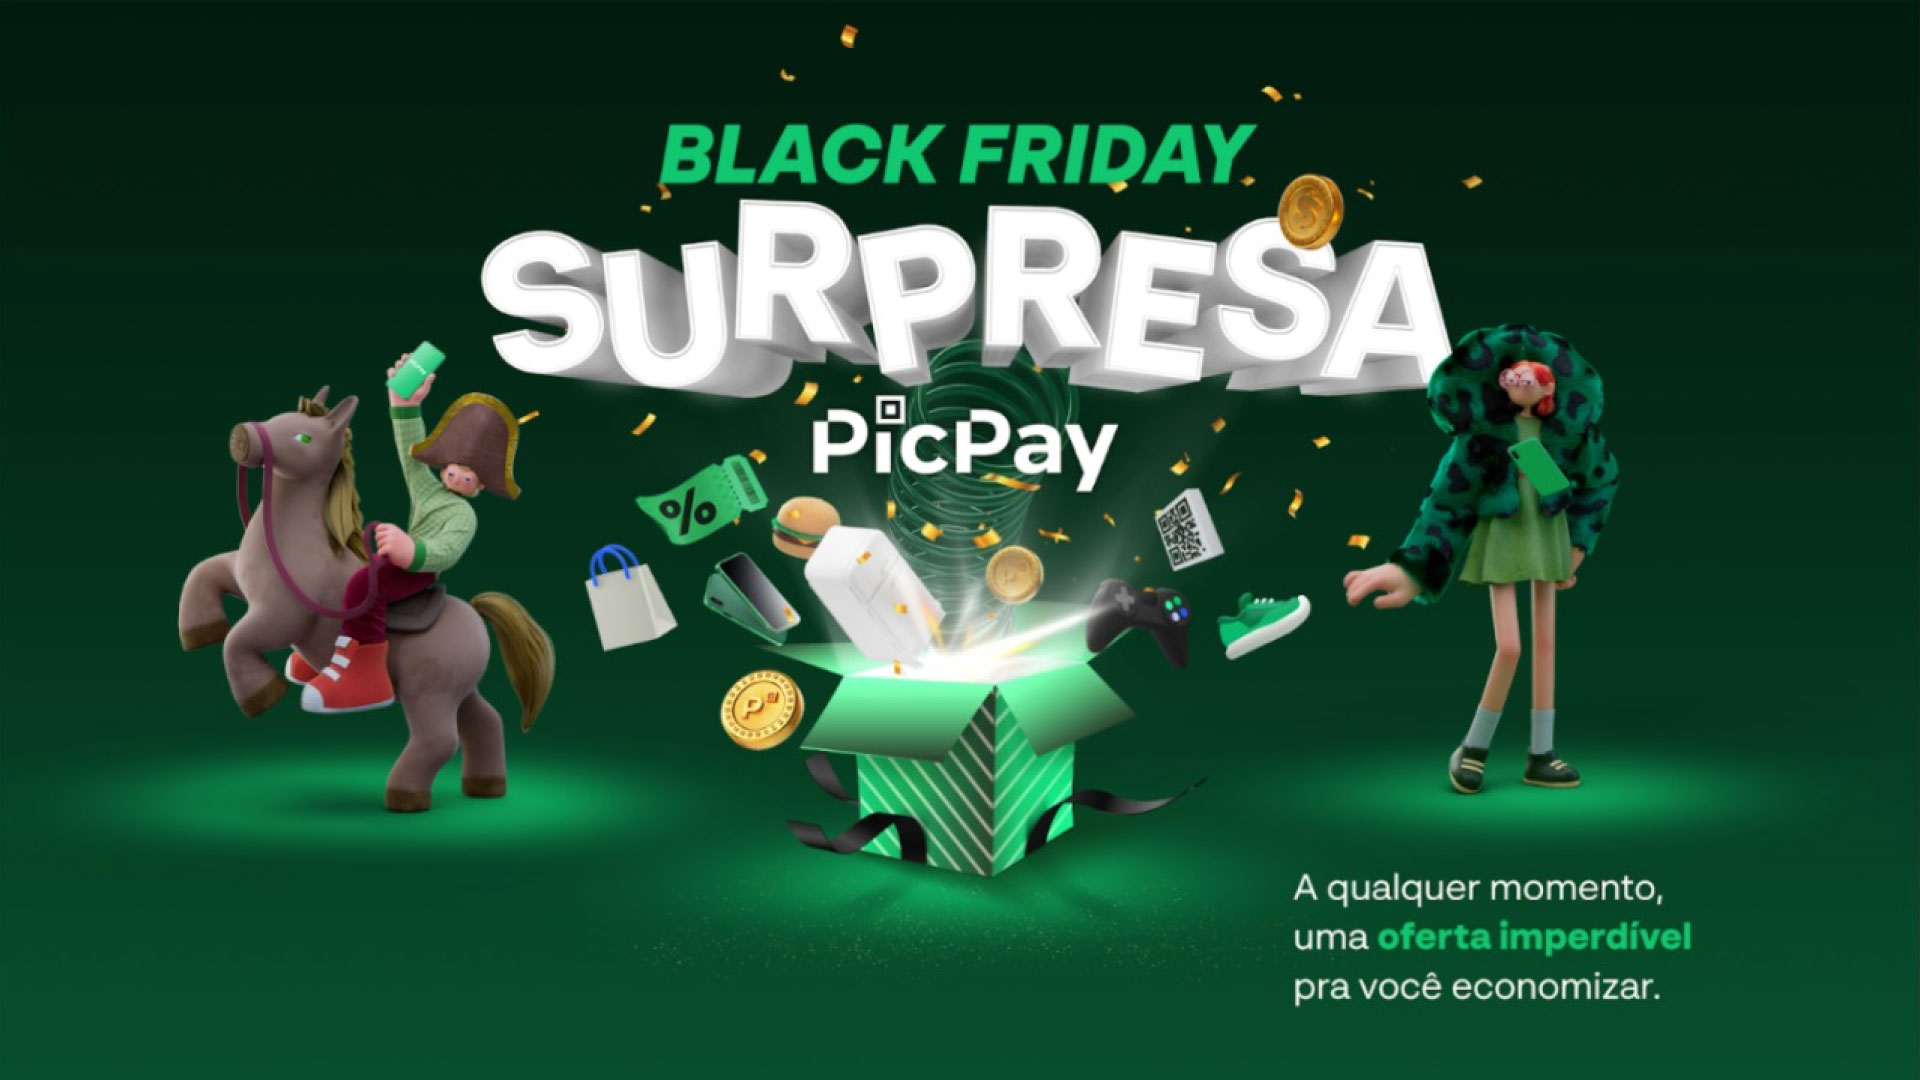 PicPay oferece até 50% de cashback, além de promoções e ofertas surpresa / Divulgação